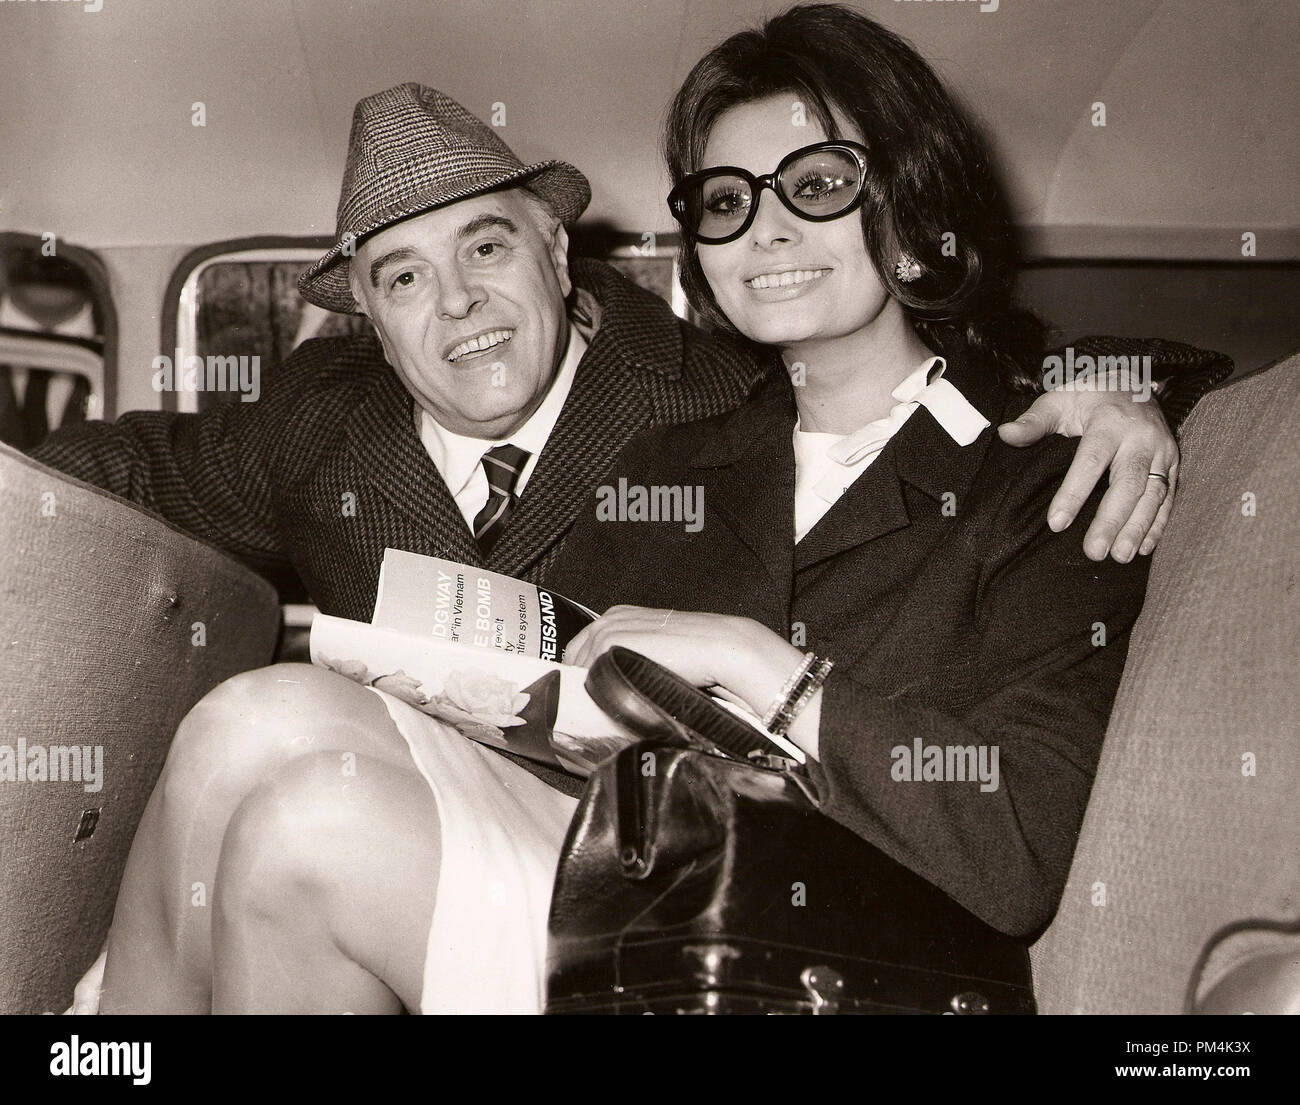 Sophia Loren und Regisseur Carlo Ponti, Dezember 1966. Datei Referenz Nr. 1016 004 THA © GFS/Hollywood Archiv - Alle Rechte vorbehalten. Stockfoto